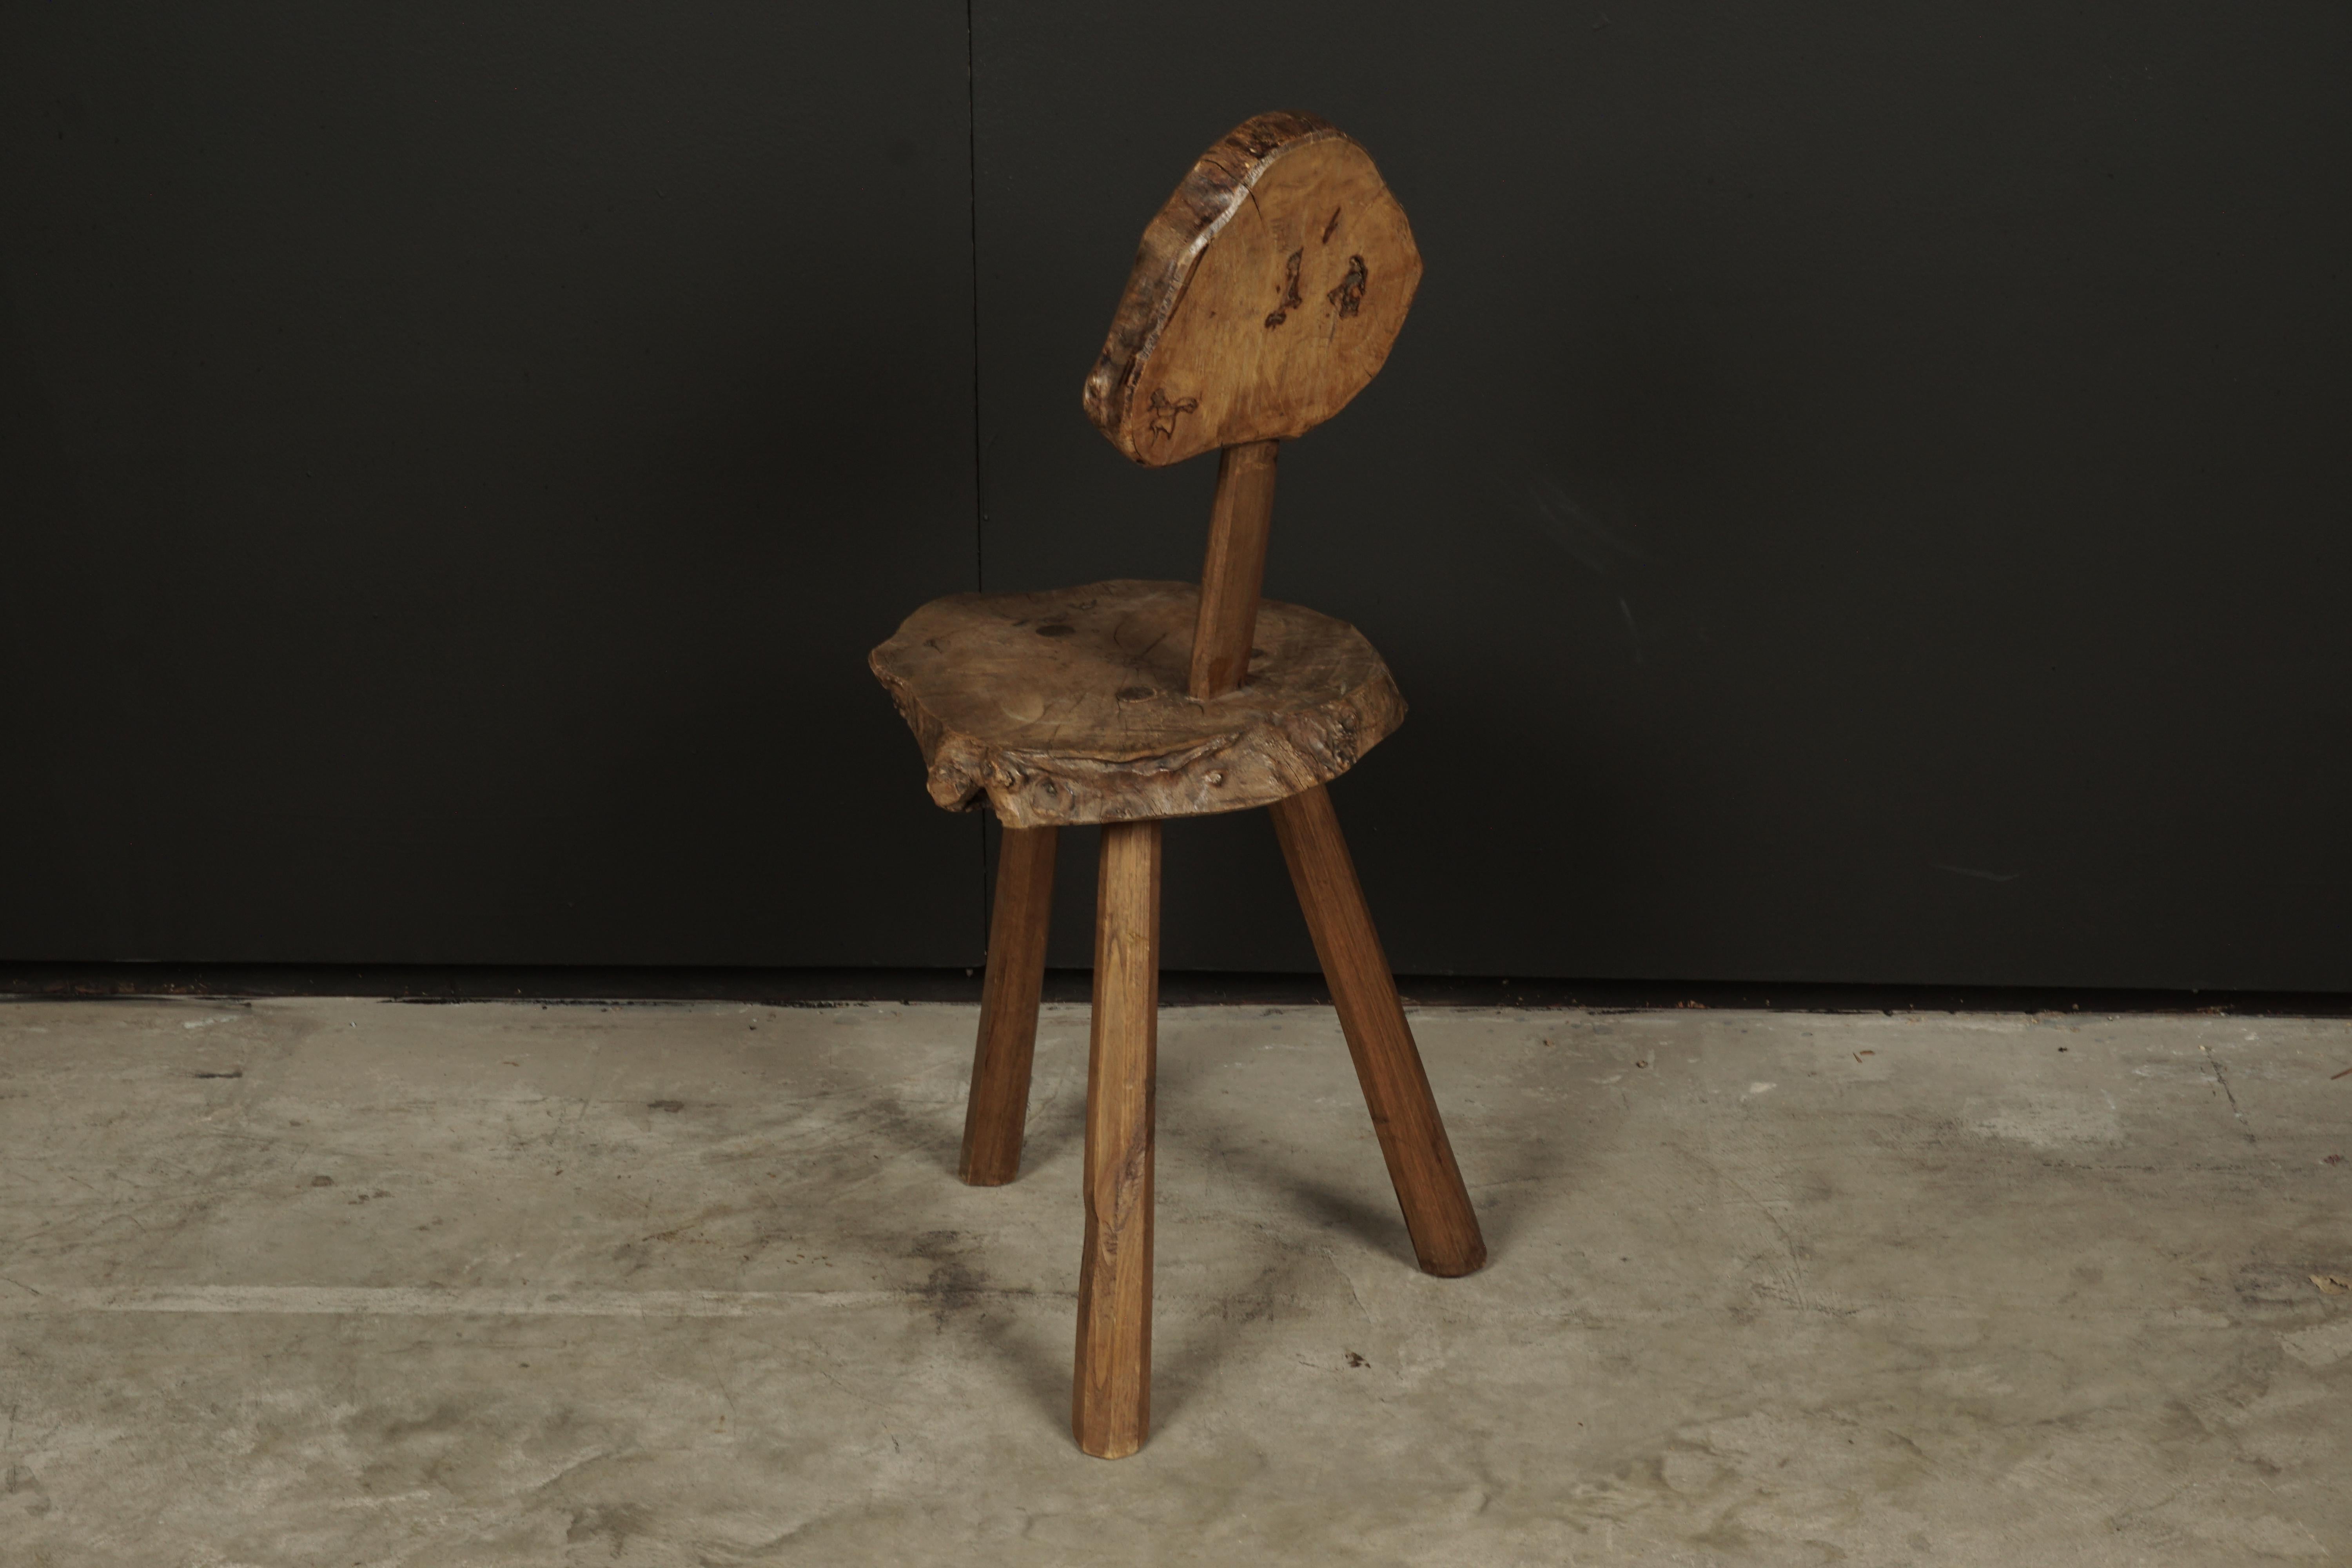 European Primitive Folk Art Chair from France, circa 1950